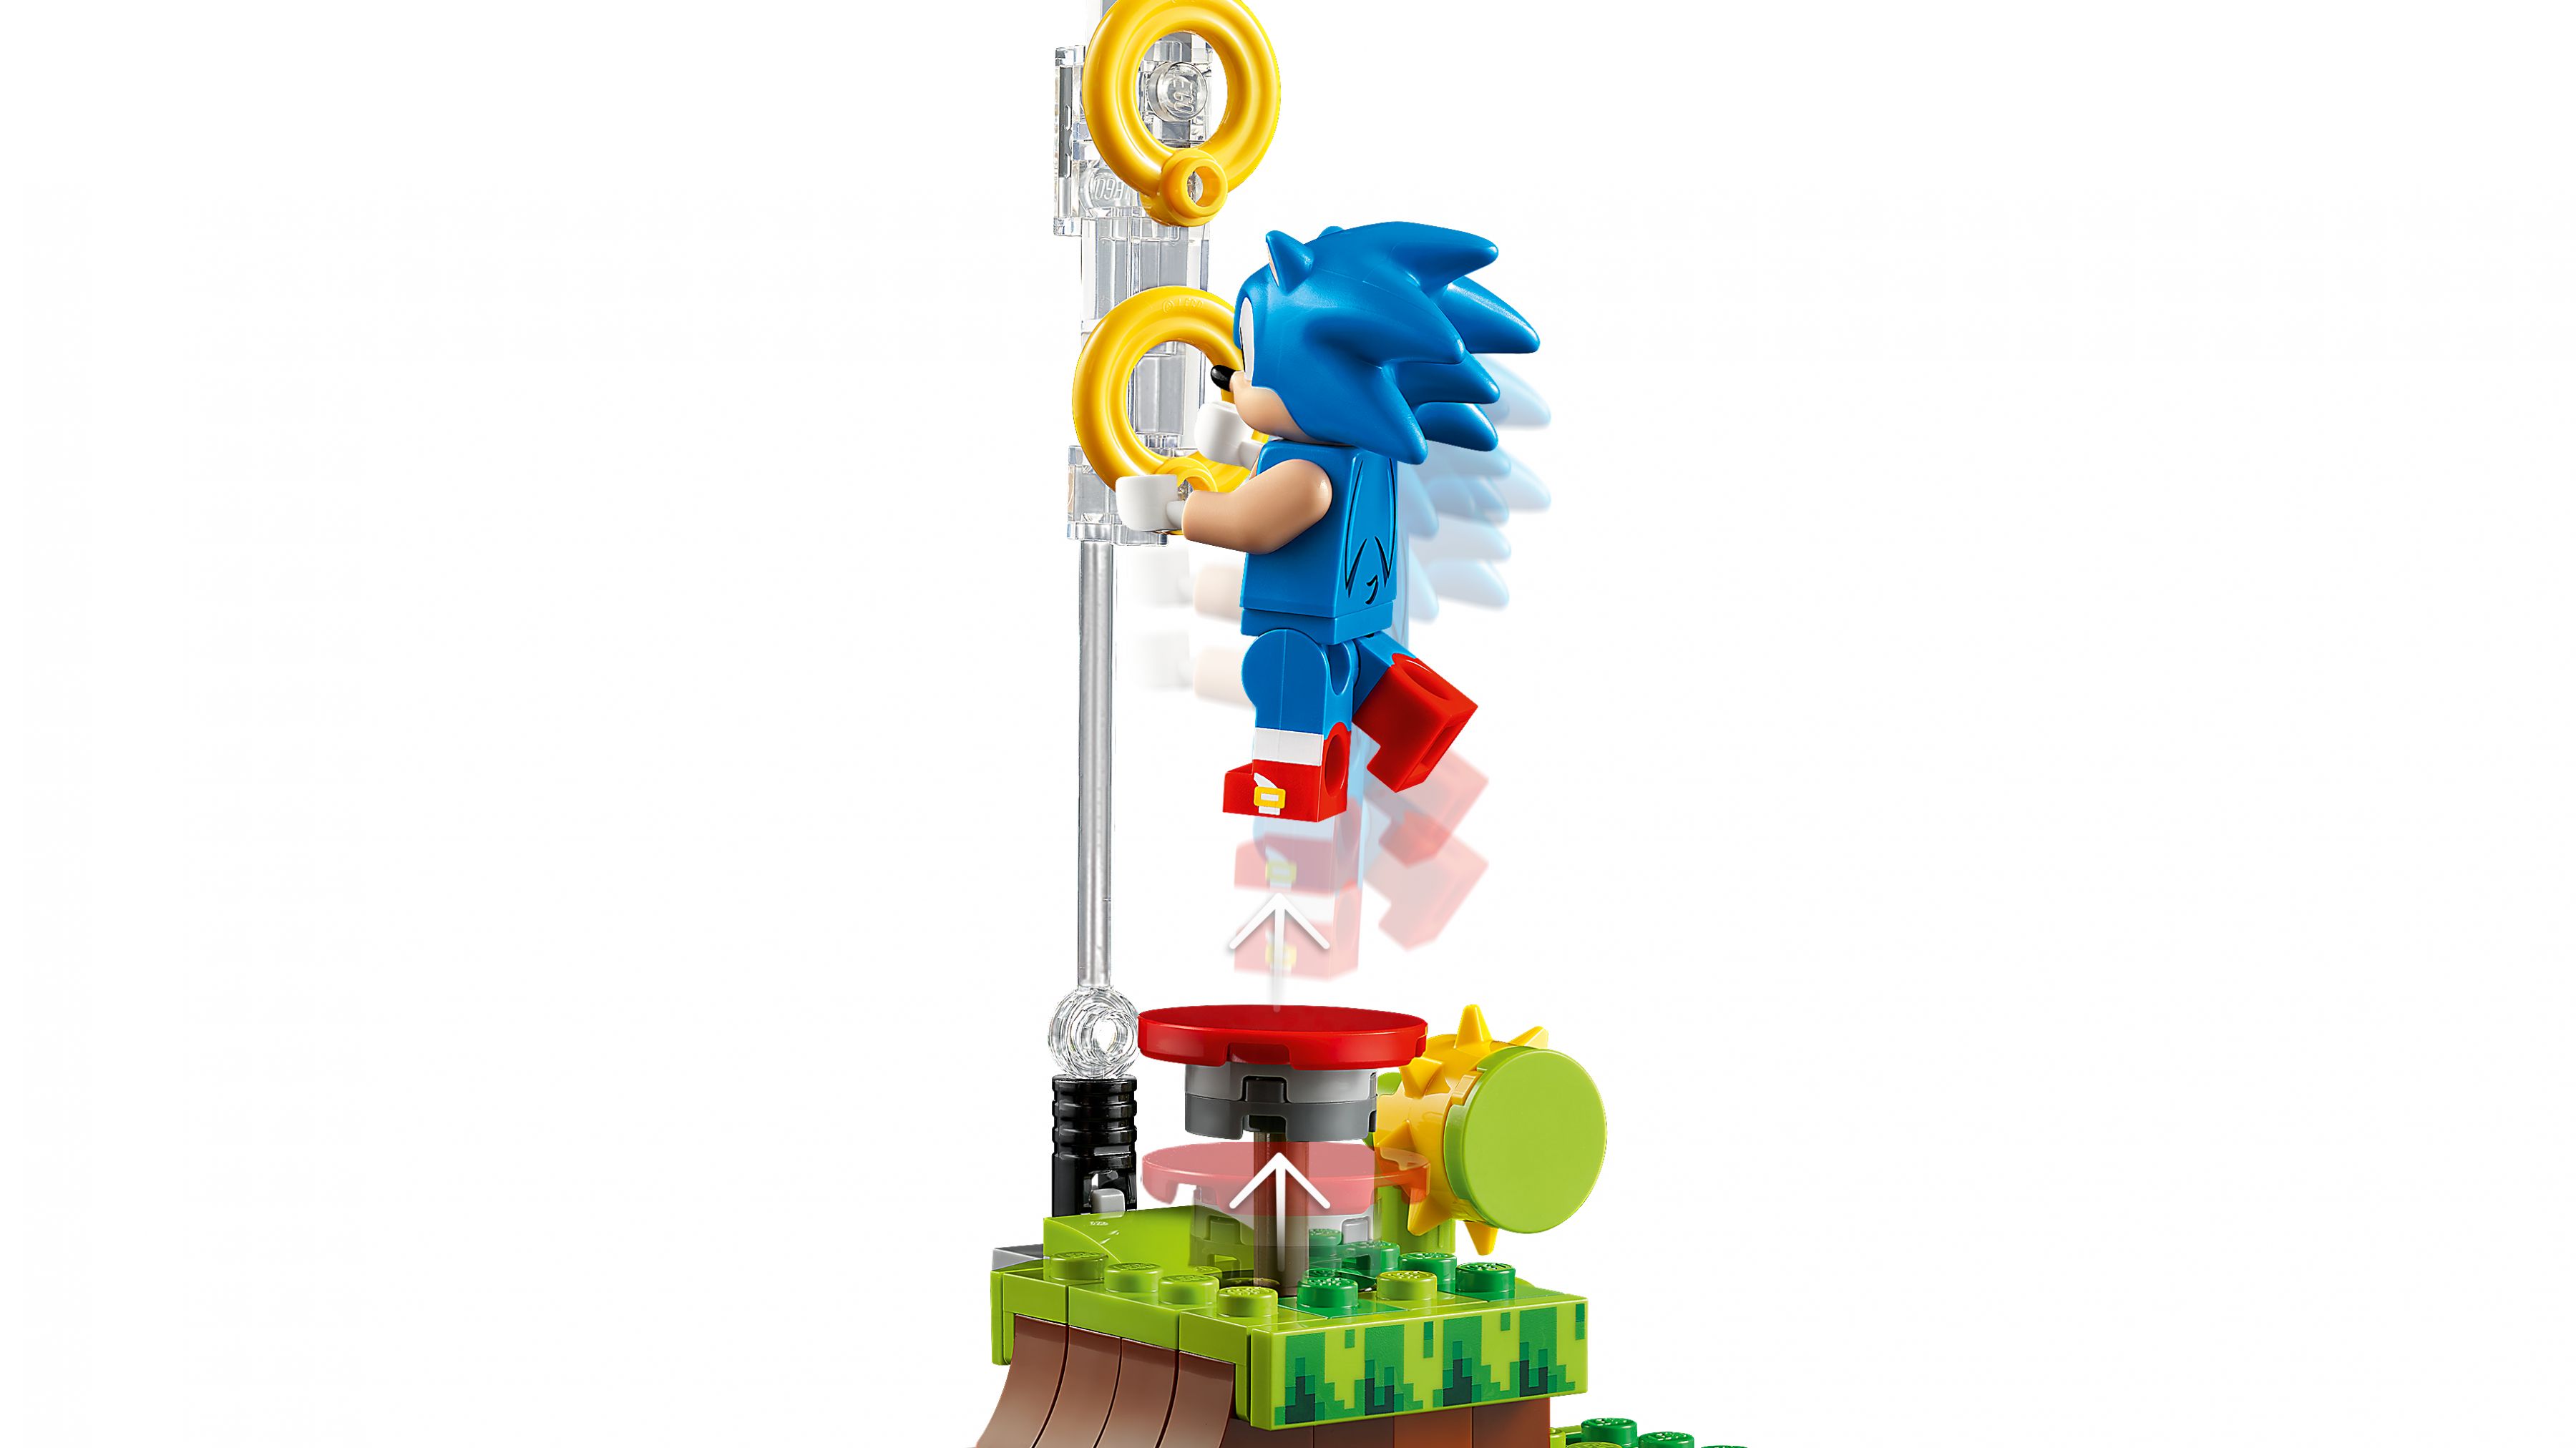 LEGO Ideas 21331 Sonic the Hedgehog™ – Green Hill Zone LEGO_21331_web_sec04_nobg.jpg